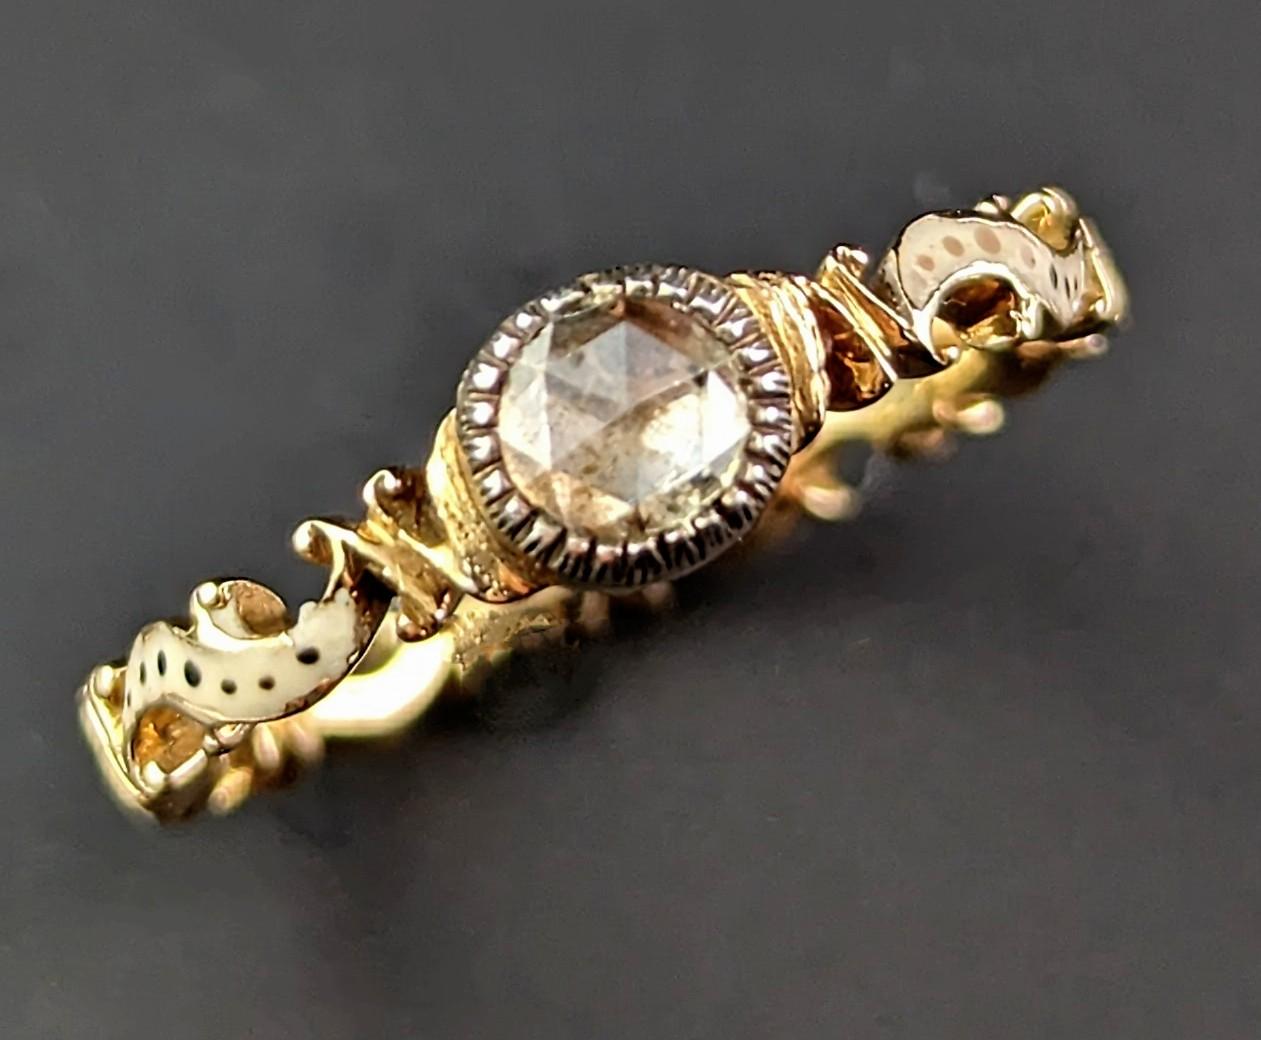 Dieser herrliche antike Solitär-Diamantring aus der Mitte des 18. Jahrhunderts wird Sie einfach verzaubern.

Ein wunderschön gearbeitetes Stück mit Elementen des Rokoko-Revivals. Das verschnörkelte und zart geformte Goldband ist rundherum mit einer